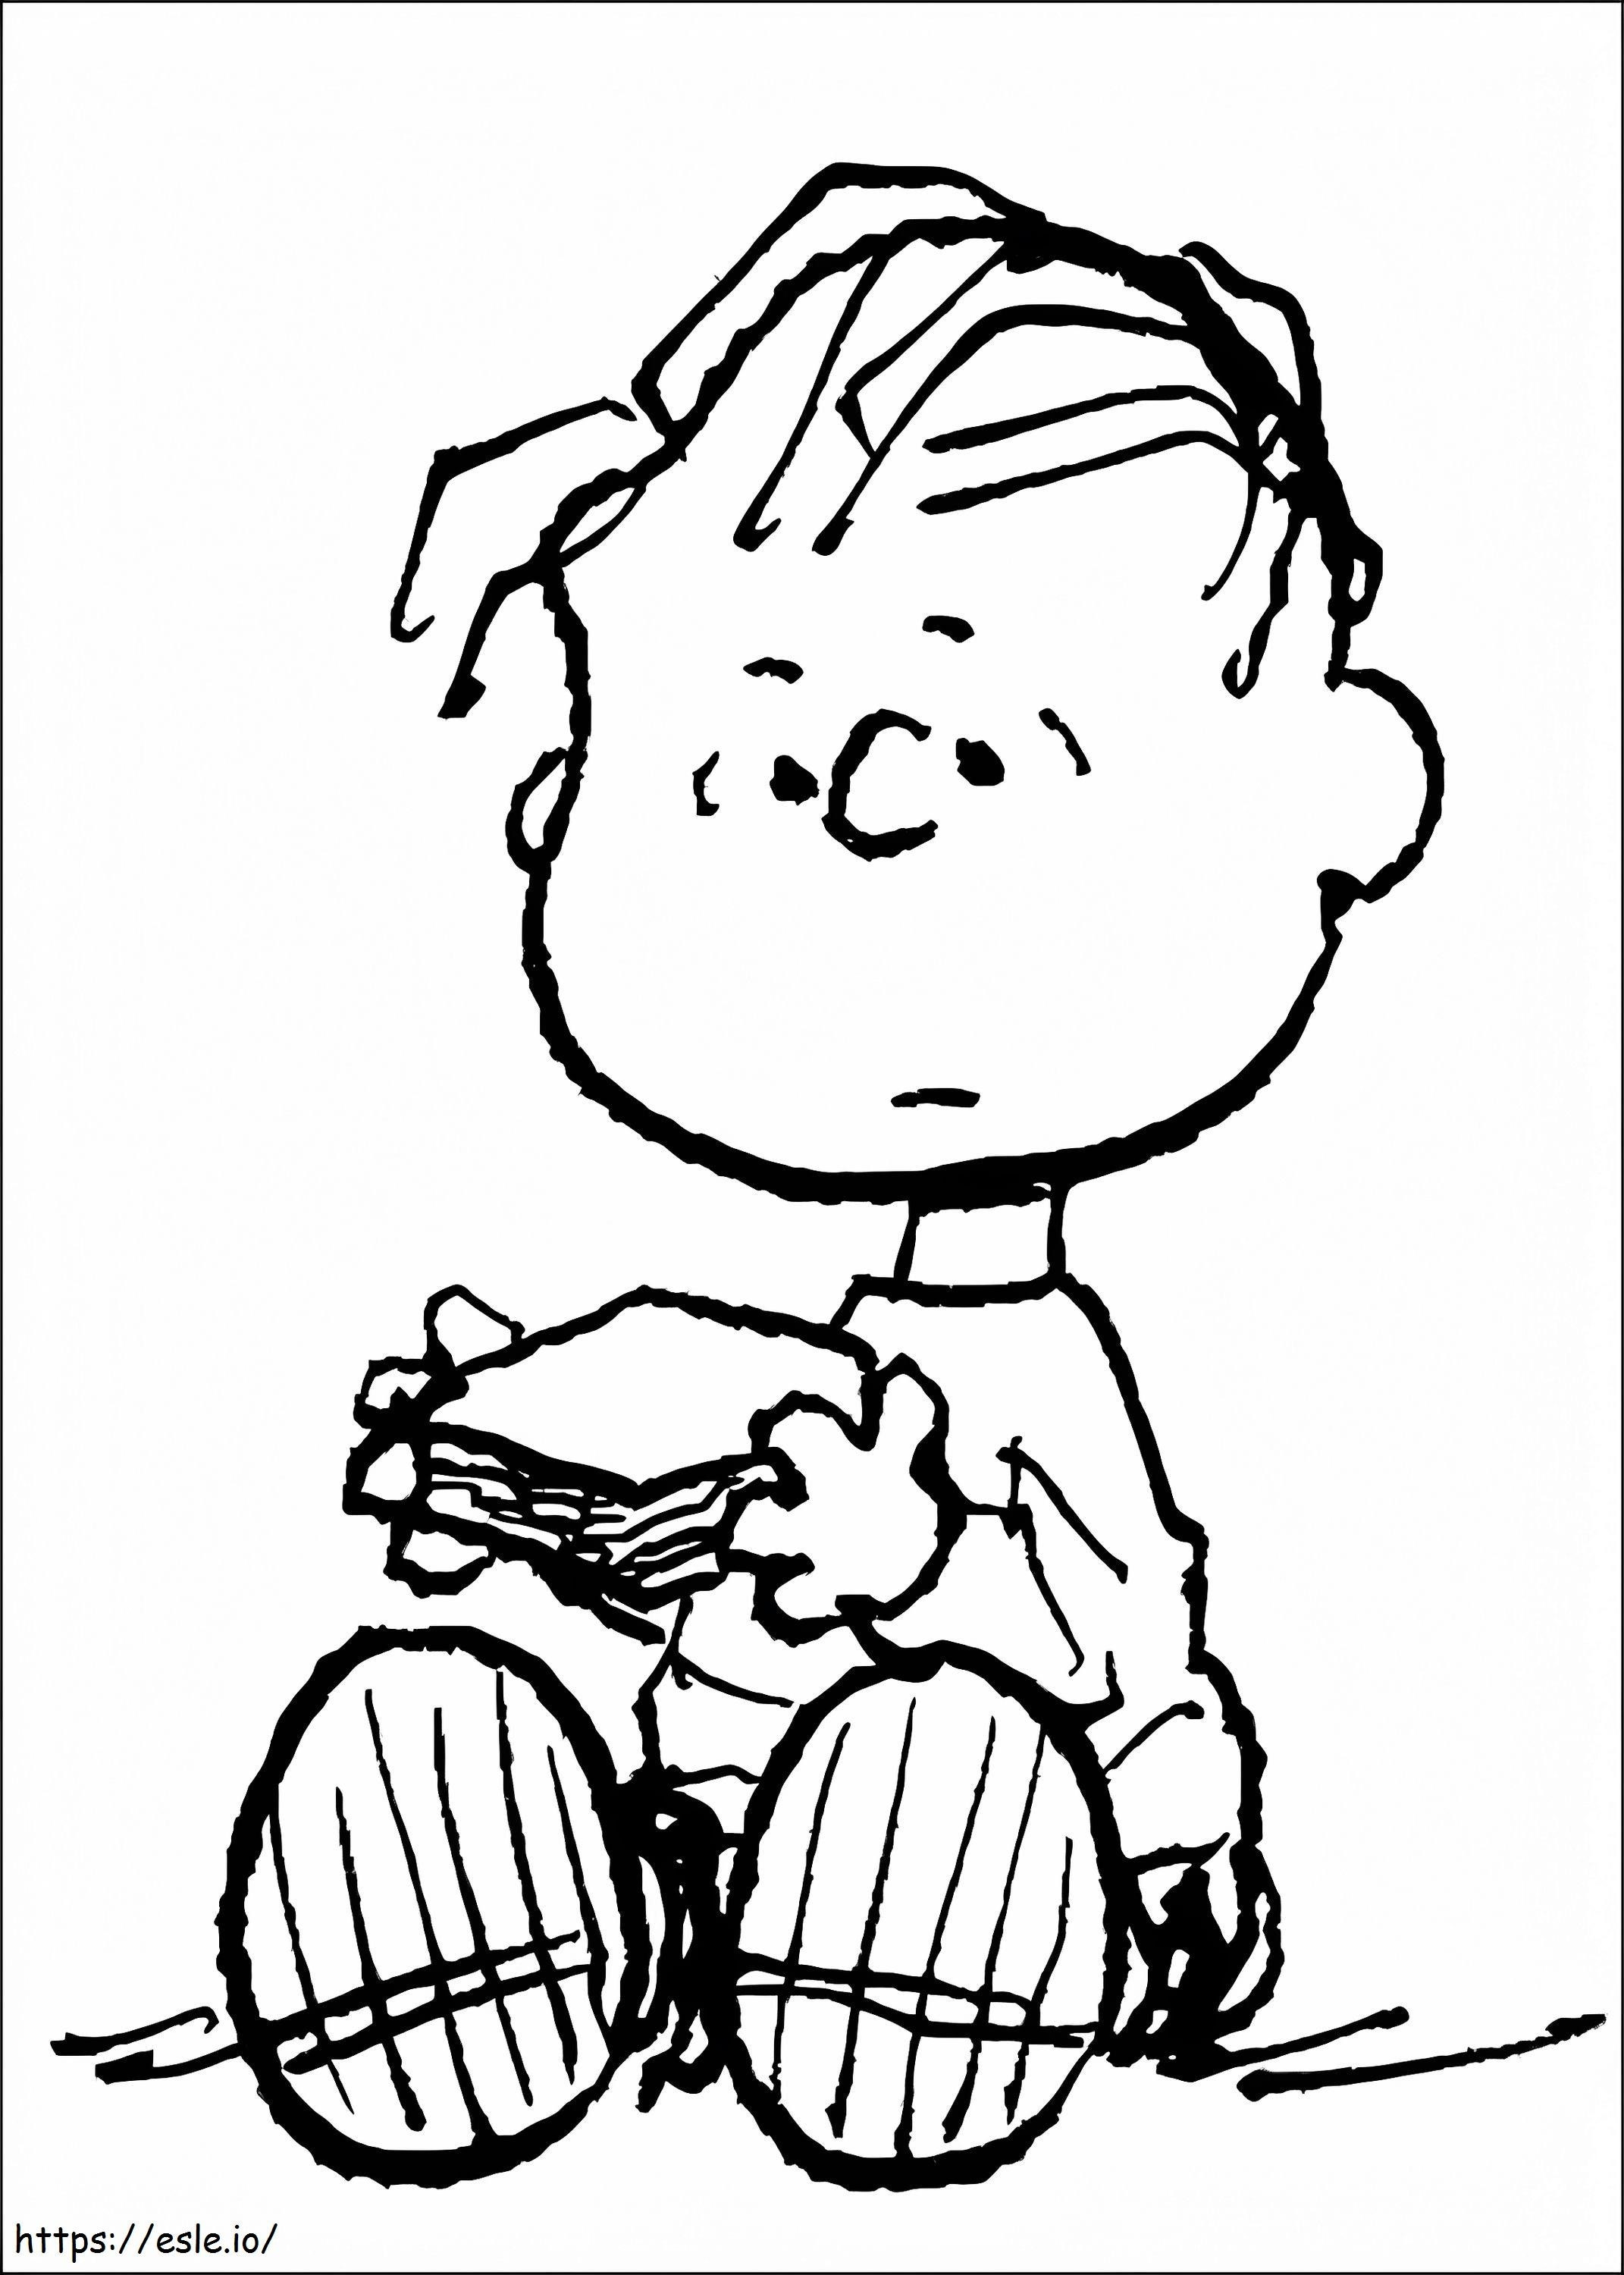 Linus Van Pelt The Peanuts coloring page